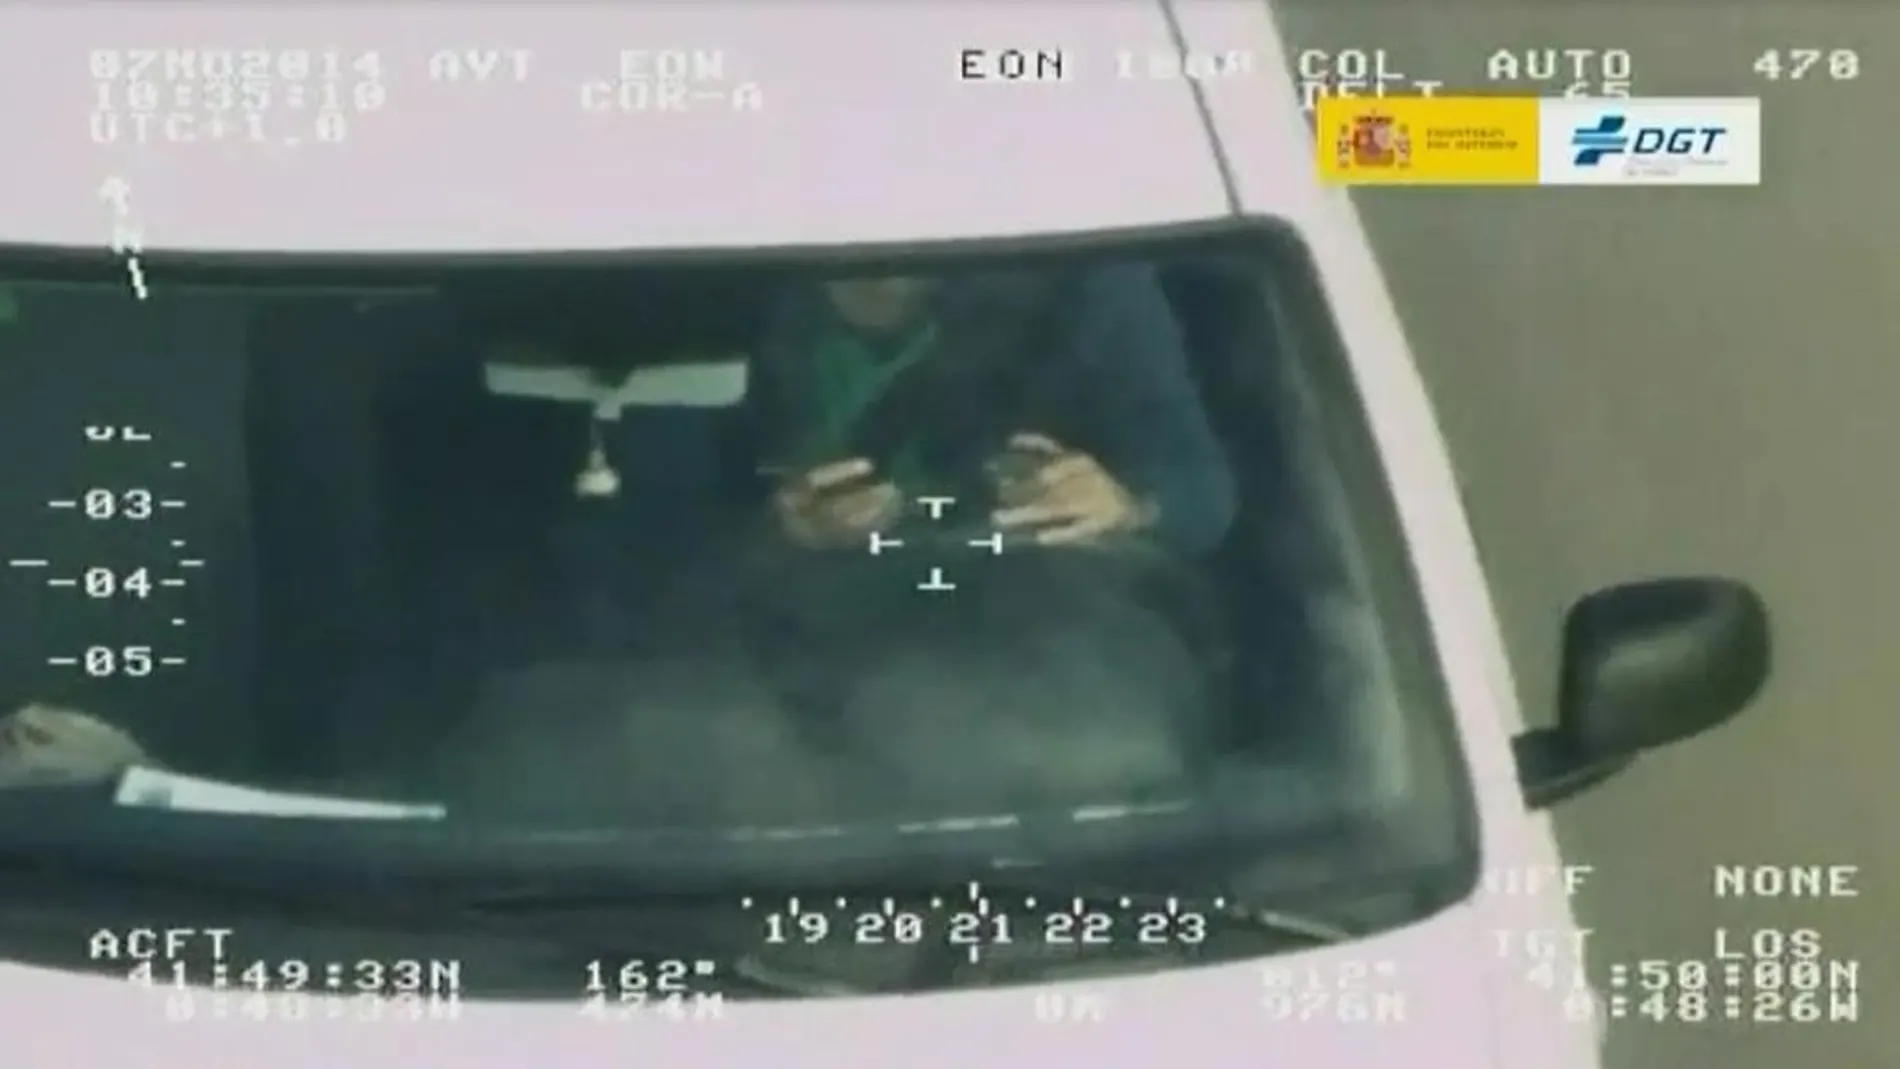 Una cámara detecta a un conductor utilizando el teléfono móvil mientras conduce